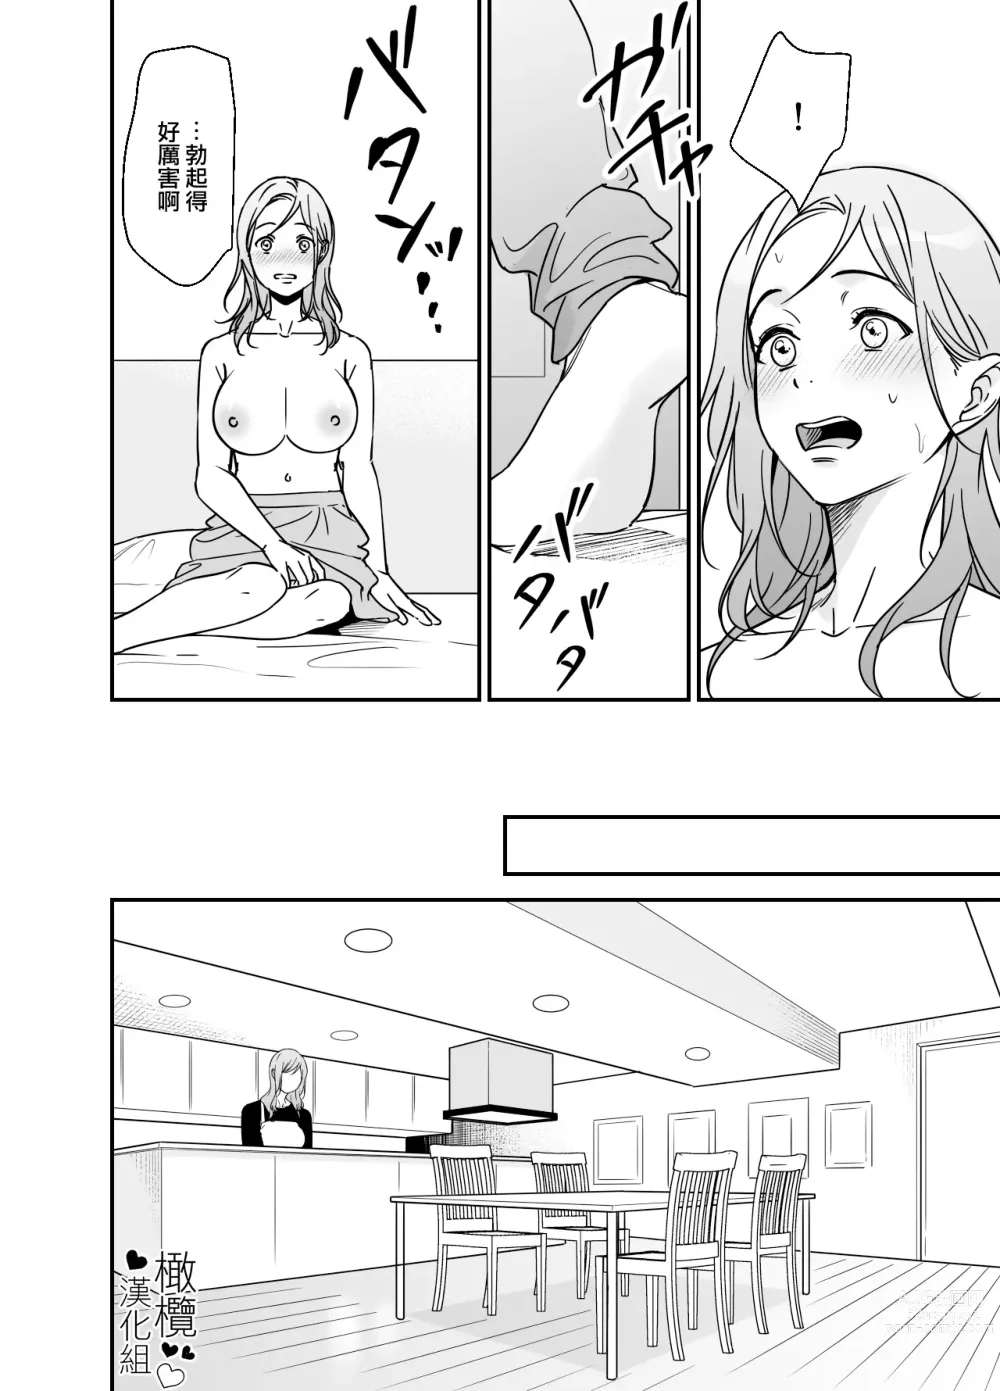 Page 27 of doujinshi 处男小说家和家政妇小姐